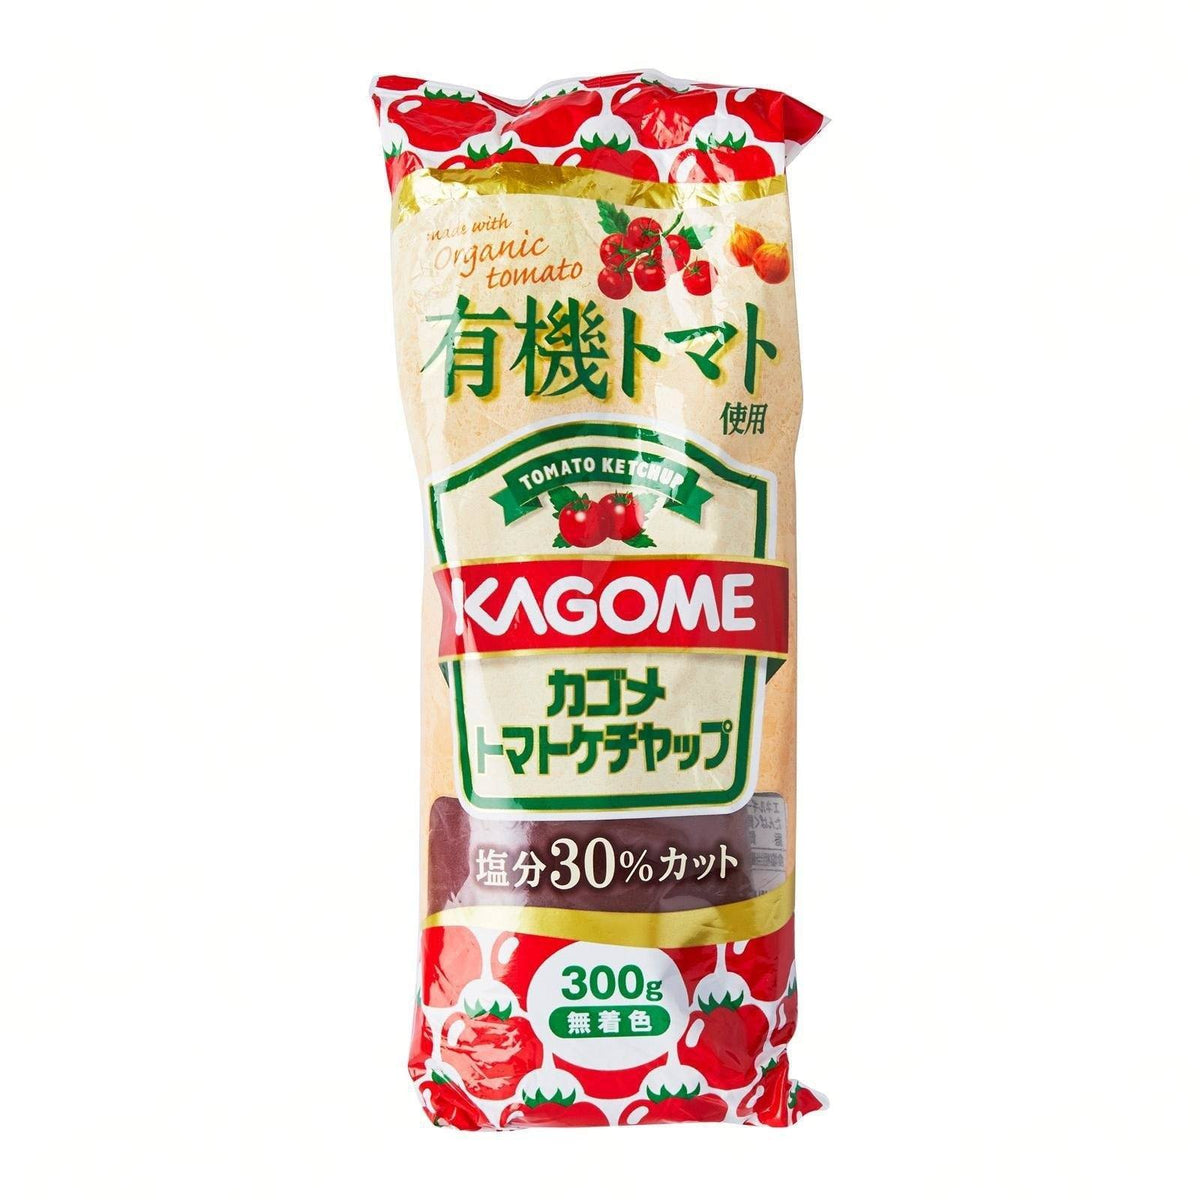 有機トマト かごめトマトケチャップ Kagome Ketchup Organic Tomatoes Ketchup 300G — Honeydaes  Japan Foods Grocery Online